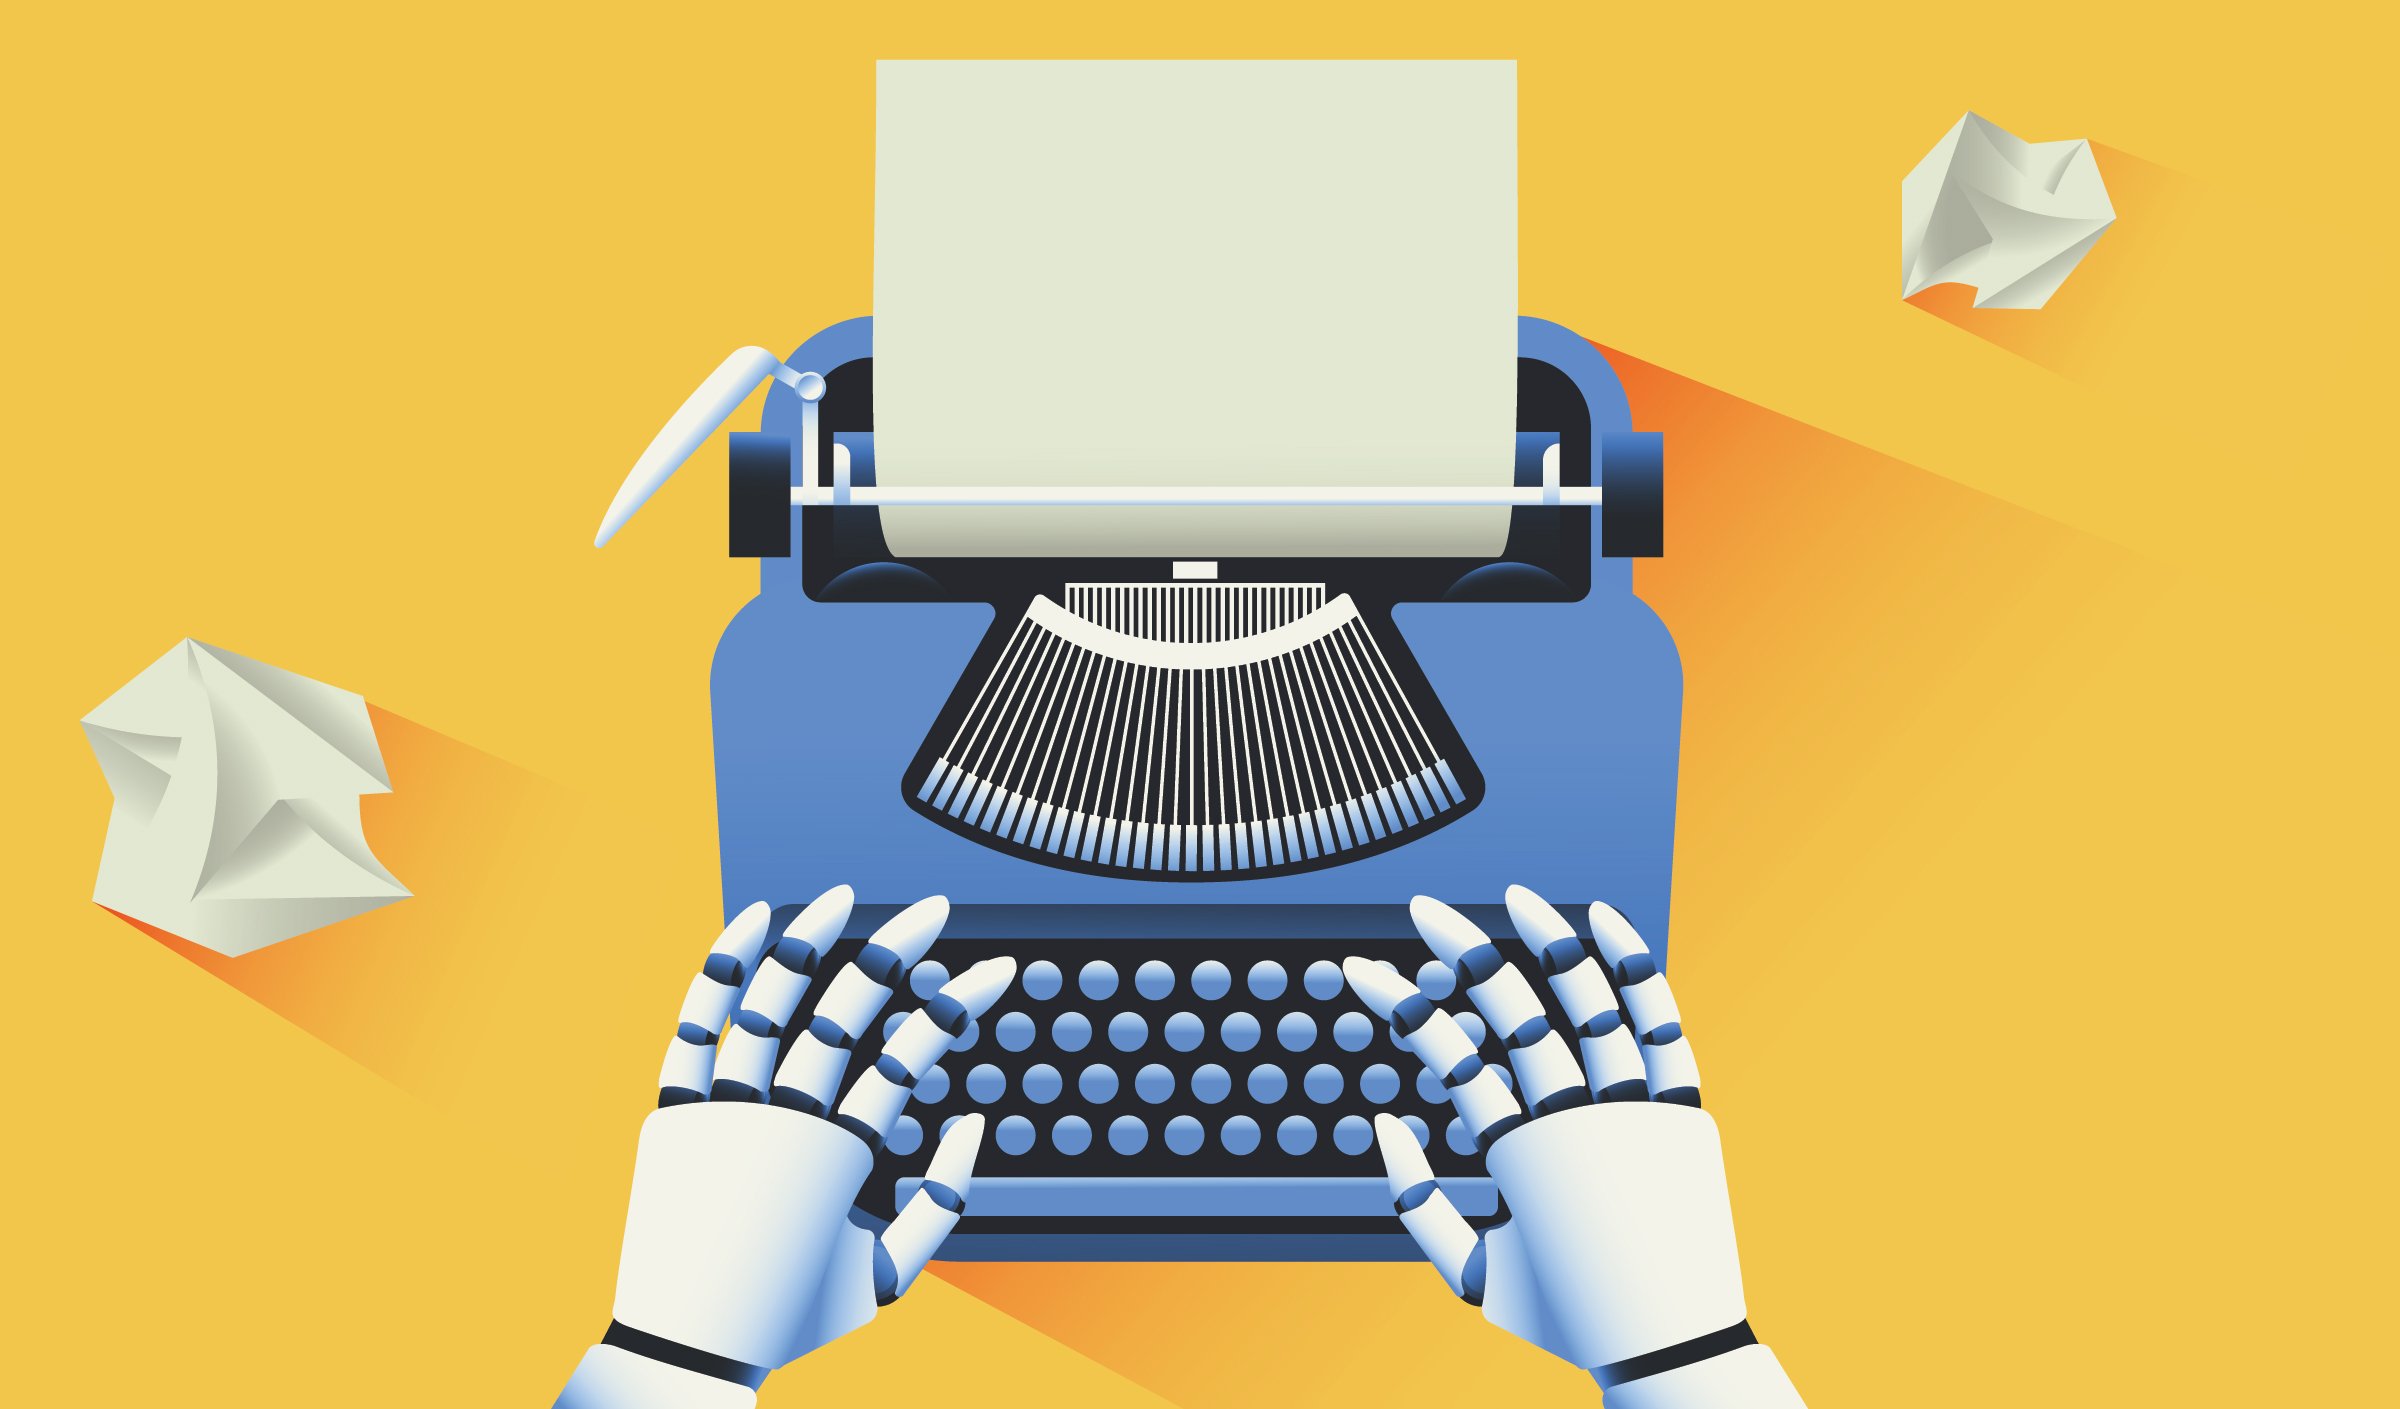 Robot writing script through type writer